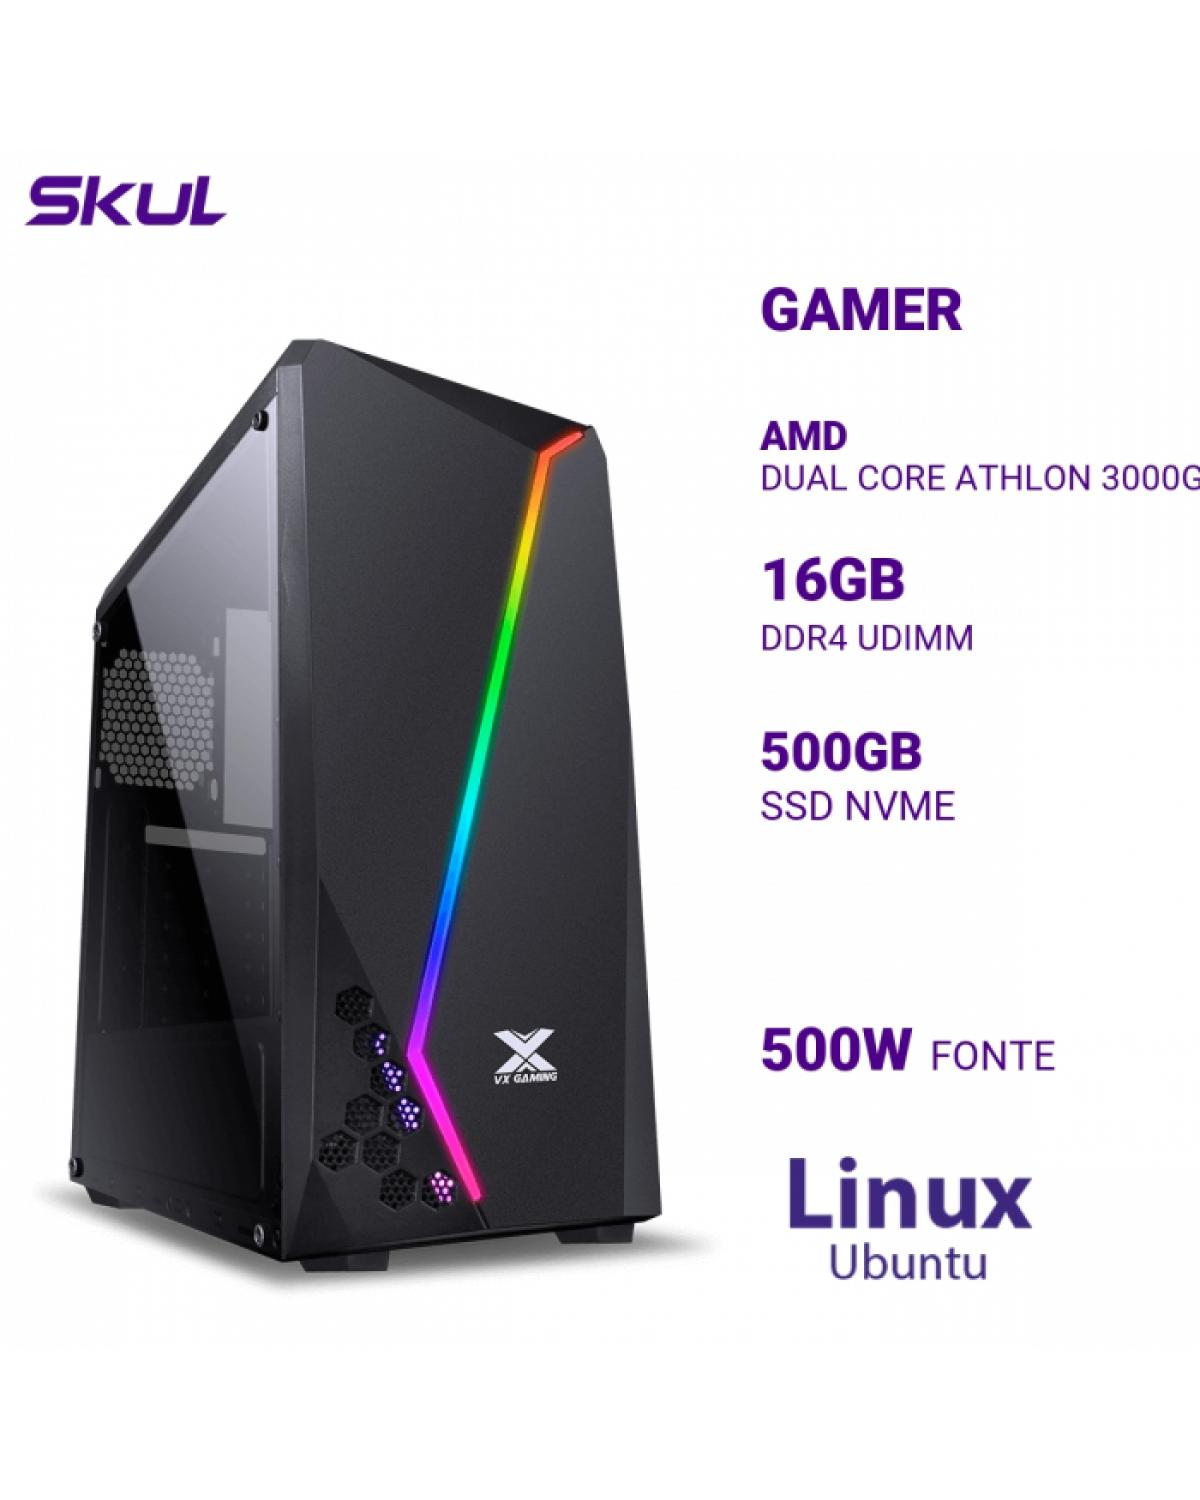 COMPUTADOR GAMER 1000 DUAL CORE ATHLON 3000G 3.50GHZ MEM 16GB DDR4 SSD 500GB NVME FONTE 500W LINUX